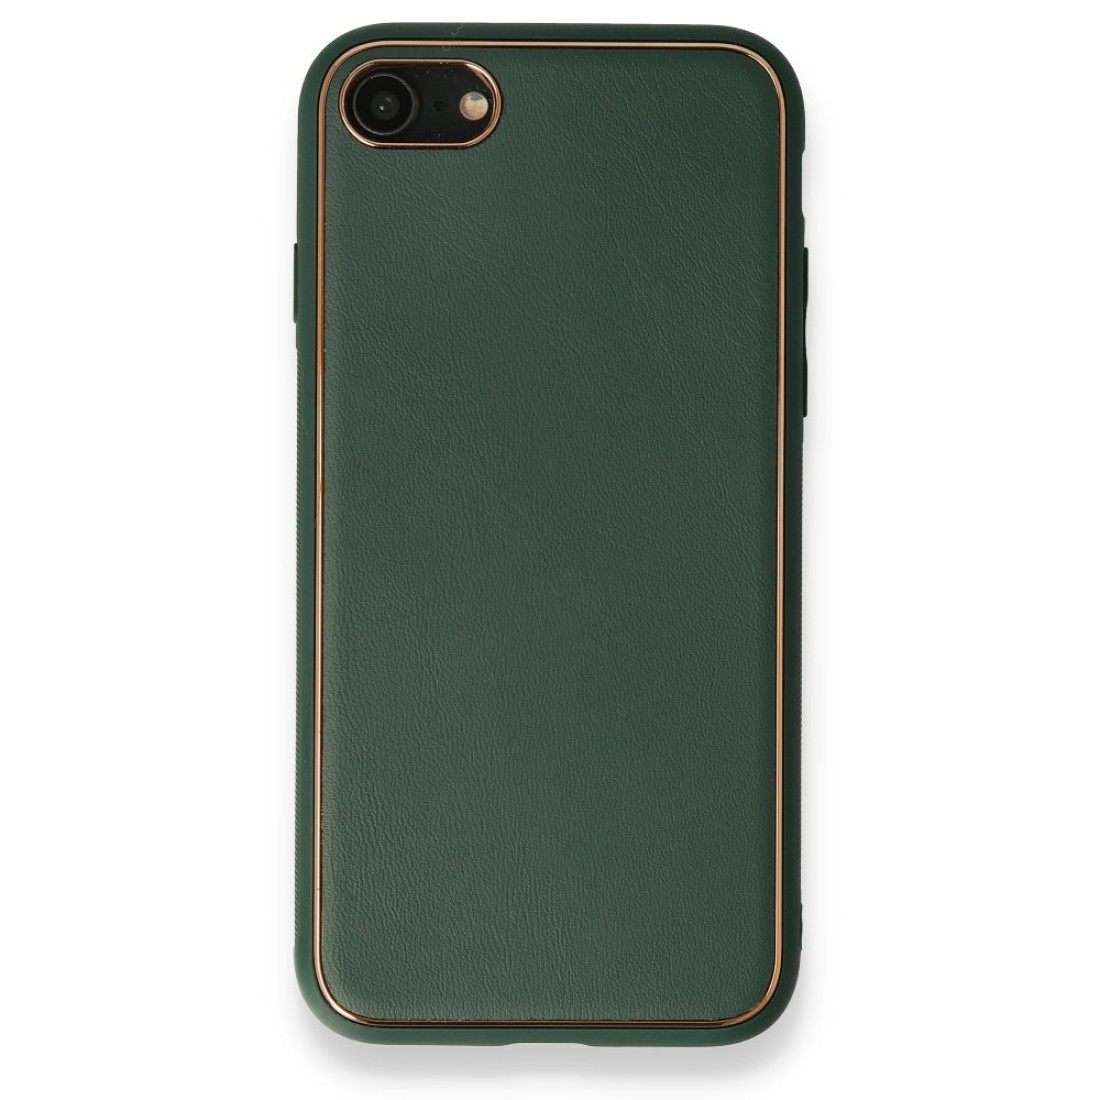 Apple iPhone 8 Kılıf Coco Deri Silikon Kapak - Yeşil